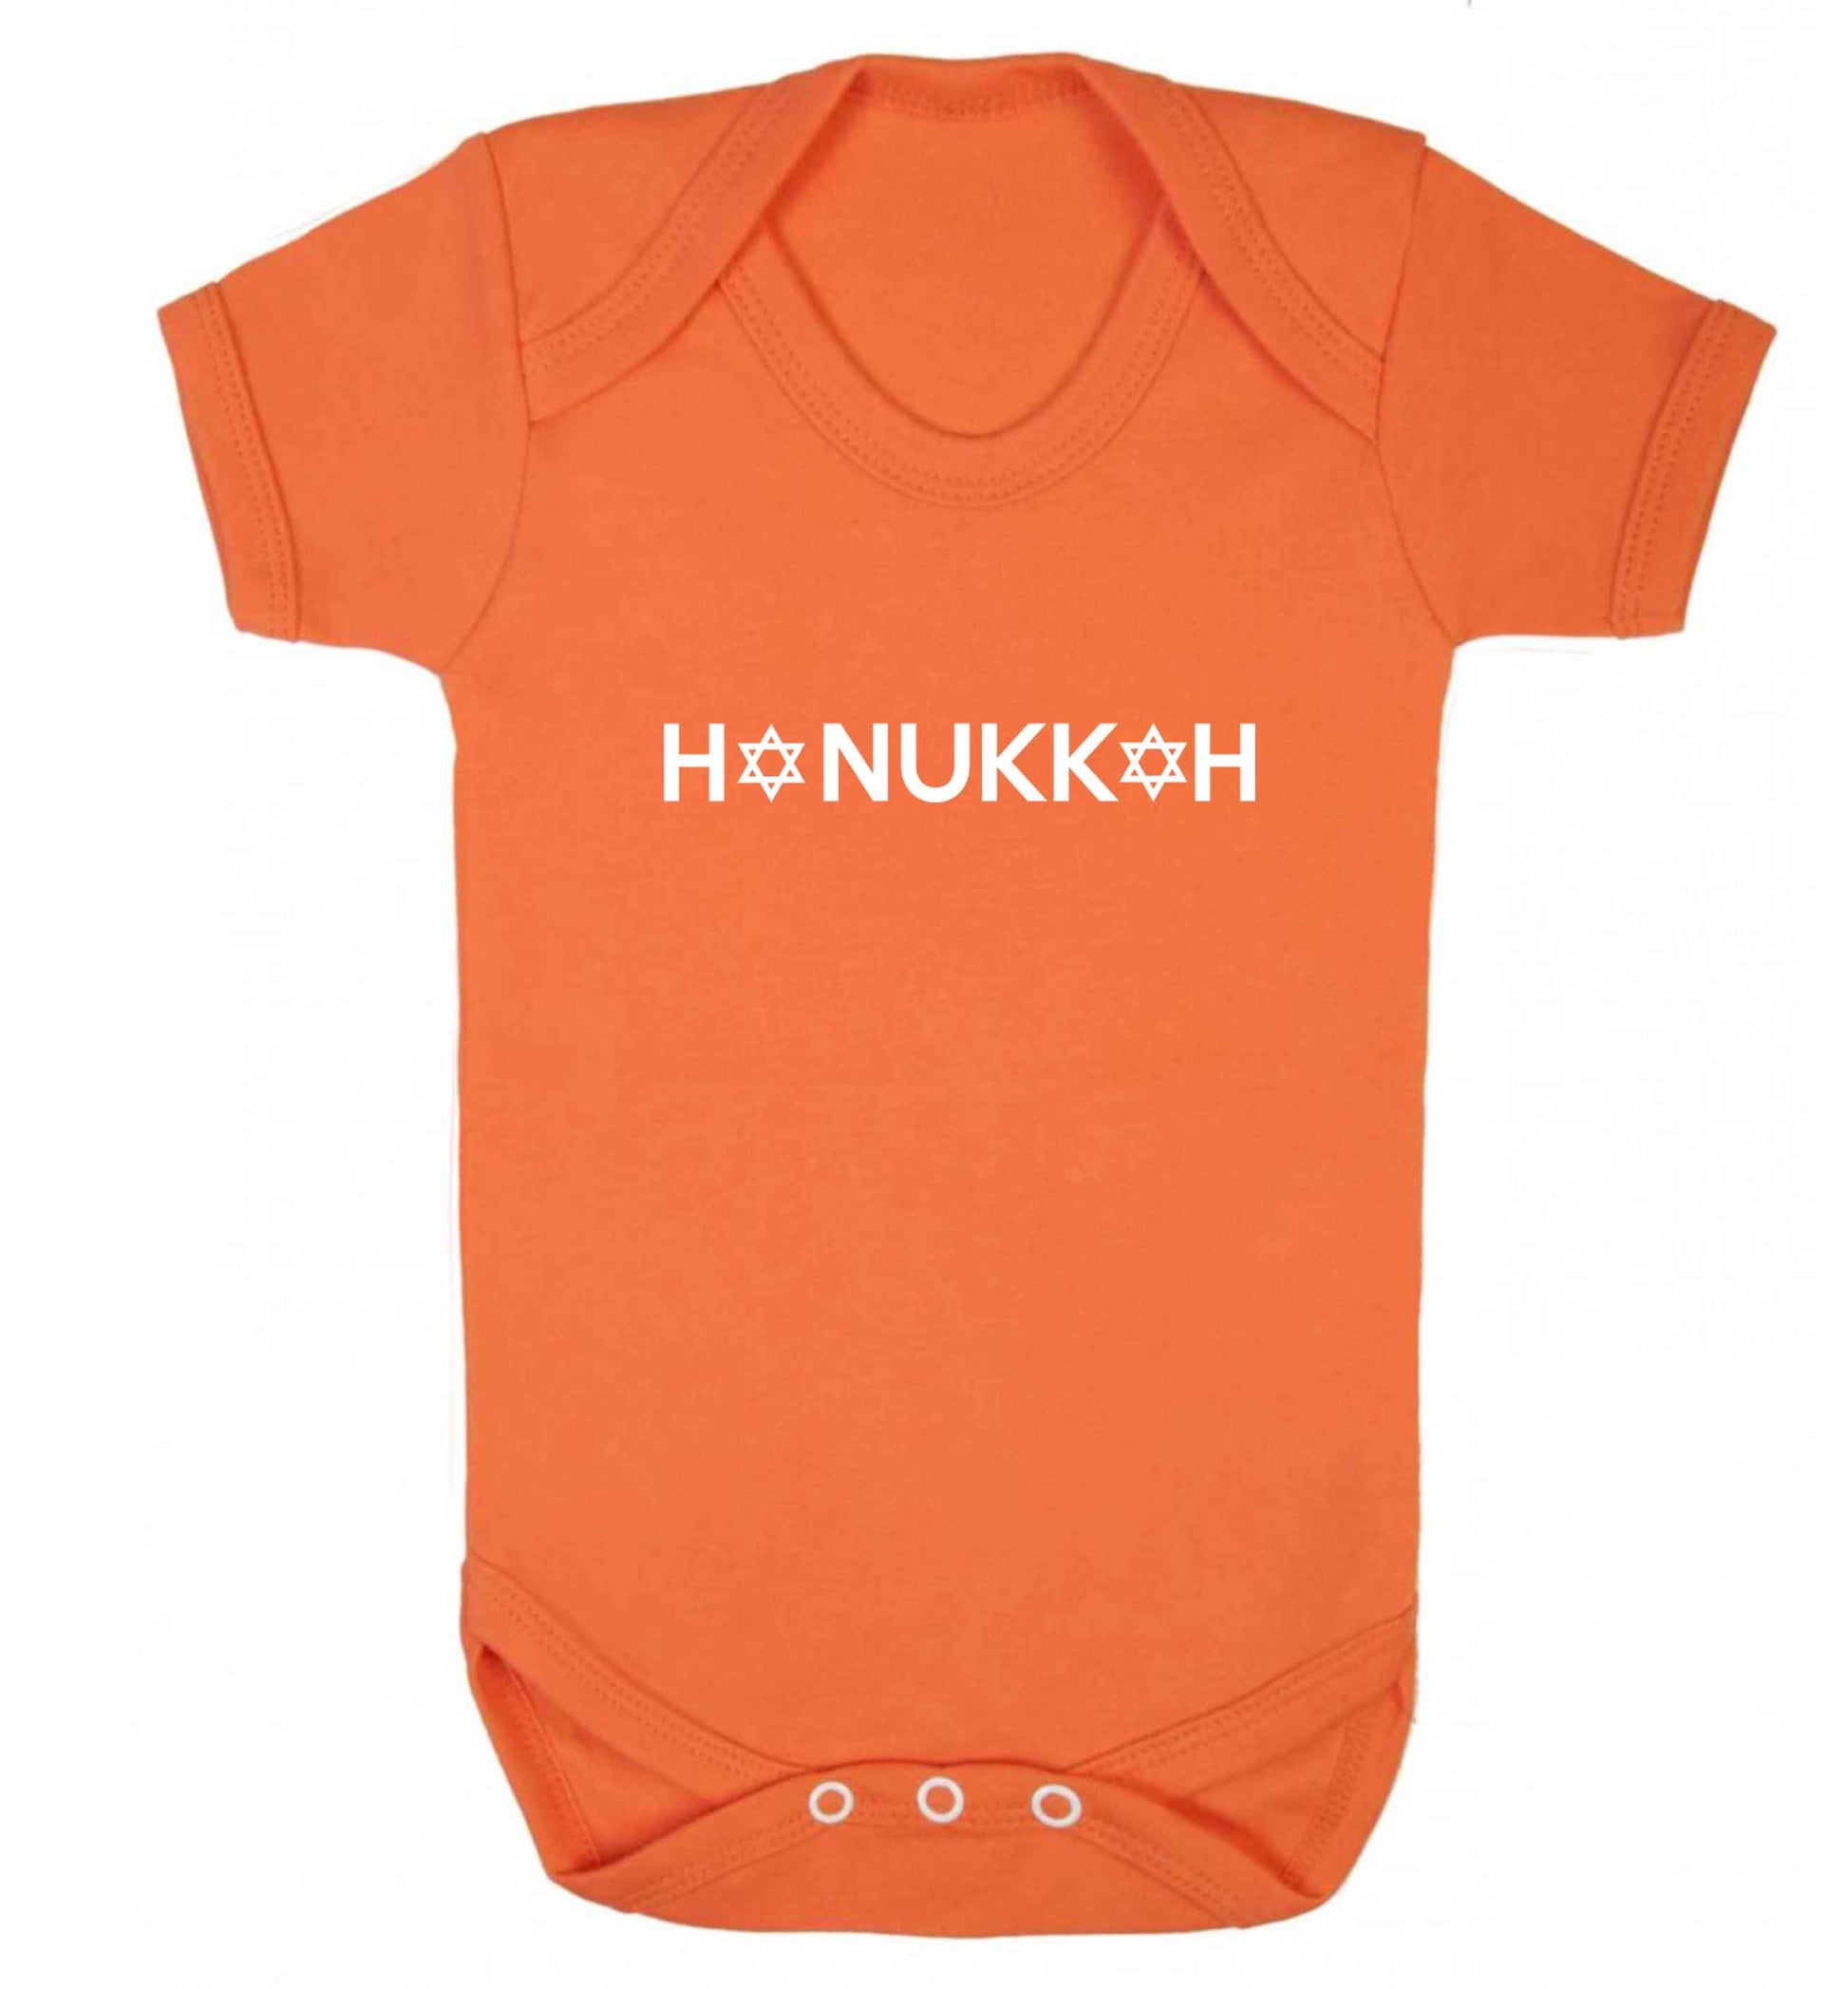 Hanukkah star of david baby vest orange 18-24 months